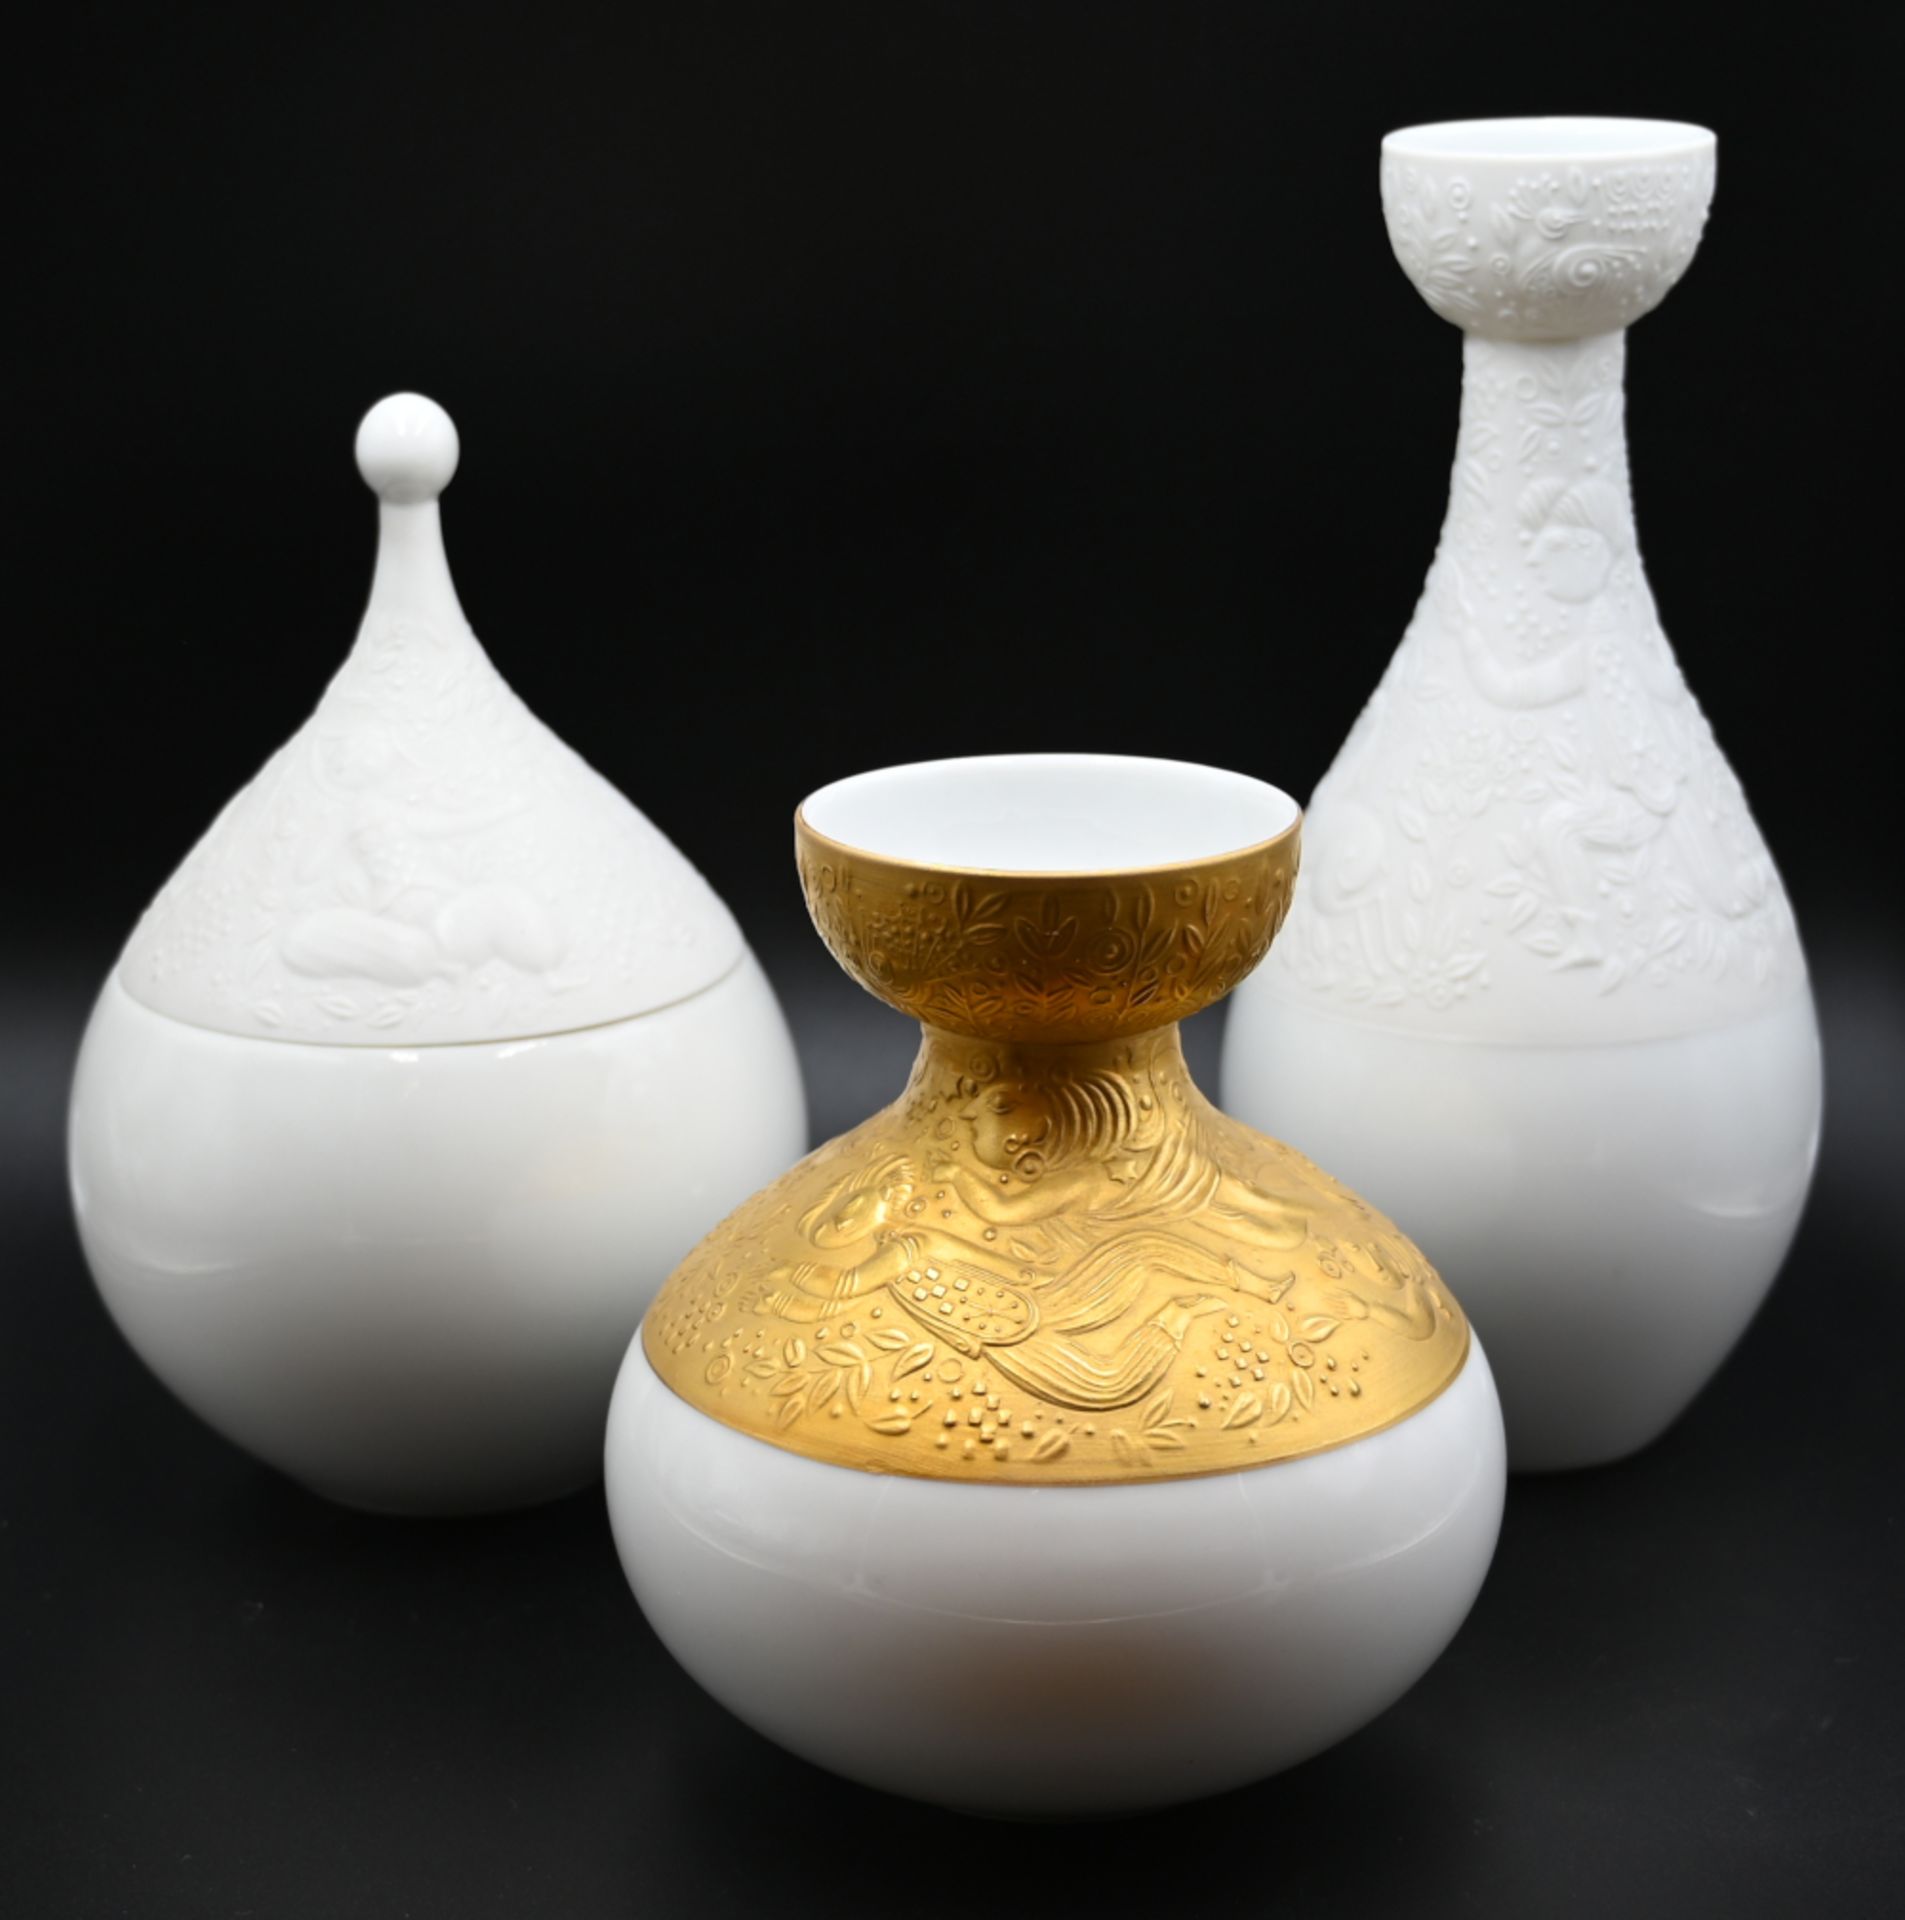 2 Vasen, 1 Deckeldose Porzellan ROSENTHAL "Zauberflöte" Design Björn WIINBLAD, weiß,